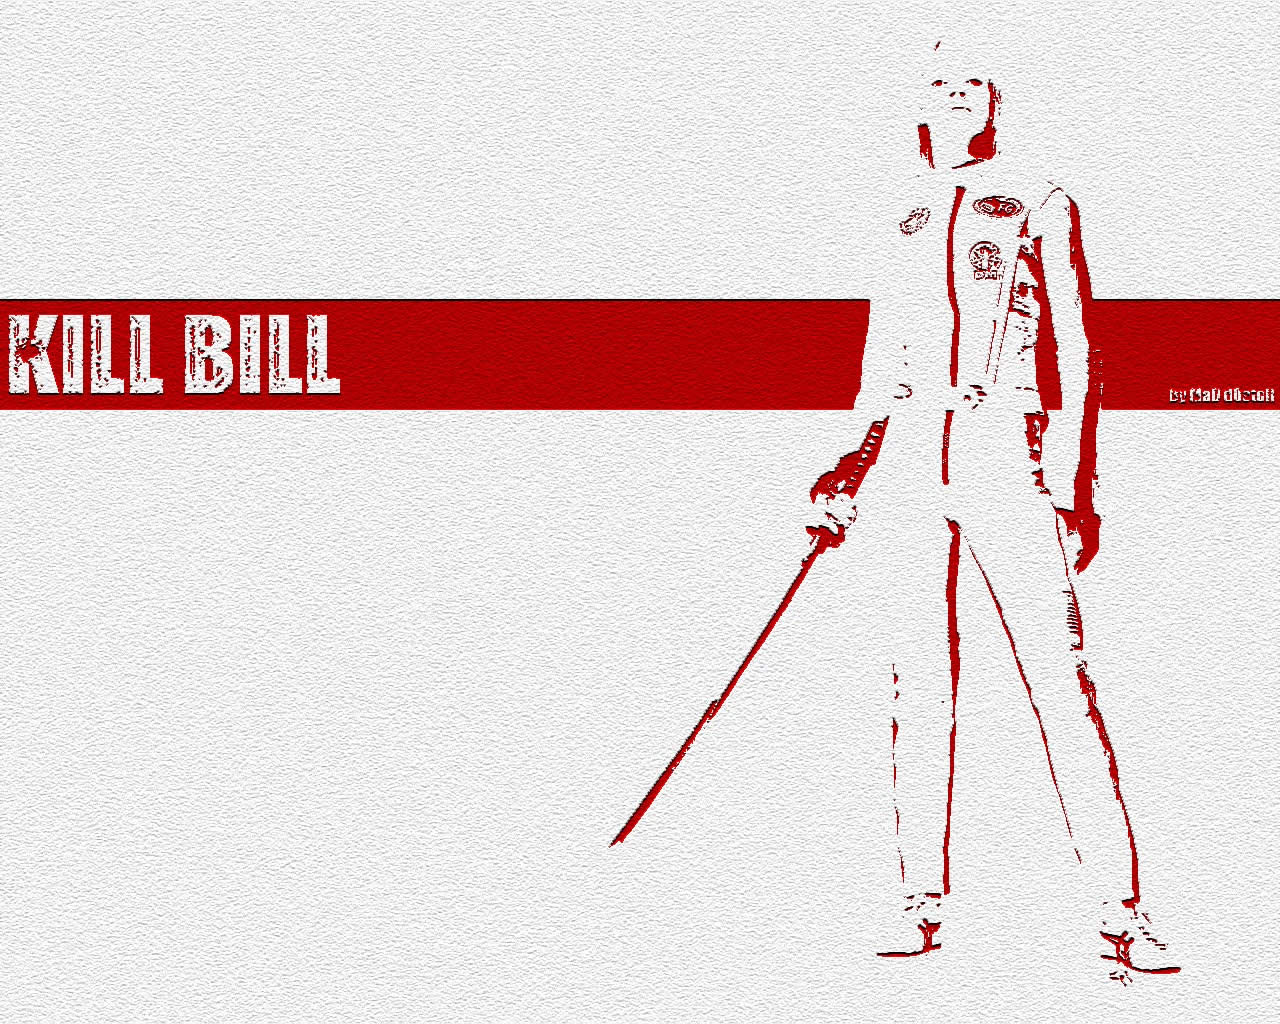 Kill Bill - 5 6 7 8 Woo Hoo Uhu Uhuhu Song - HD Wallpaper 